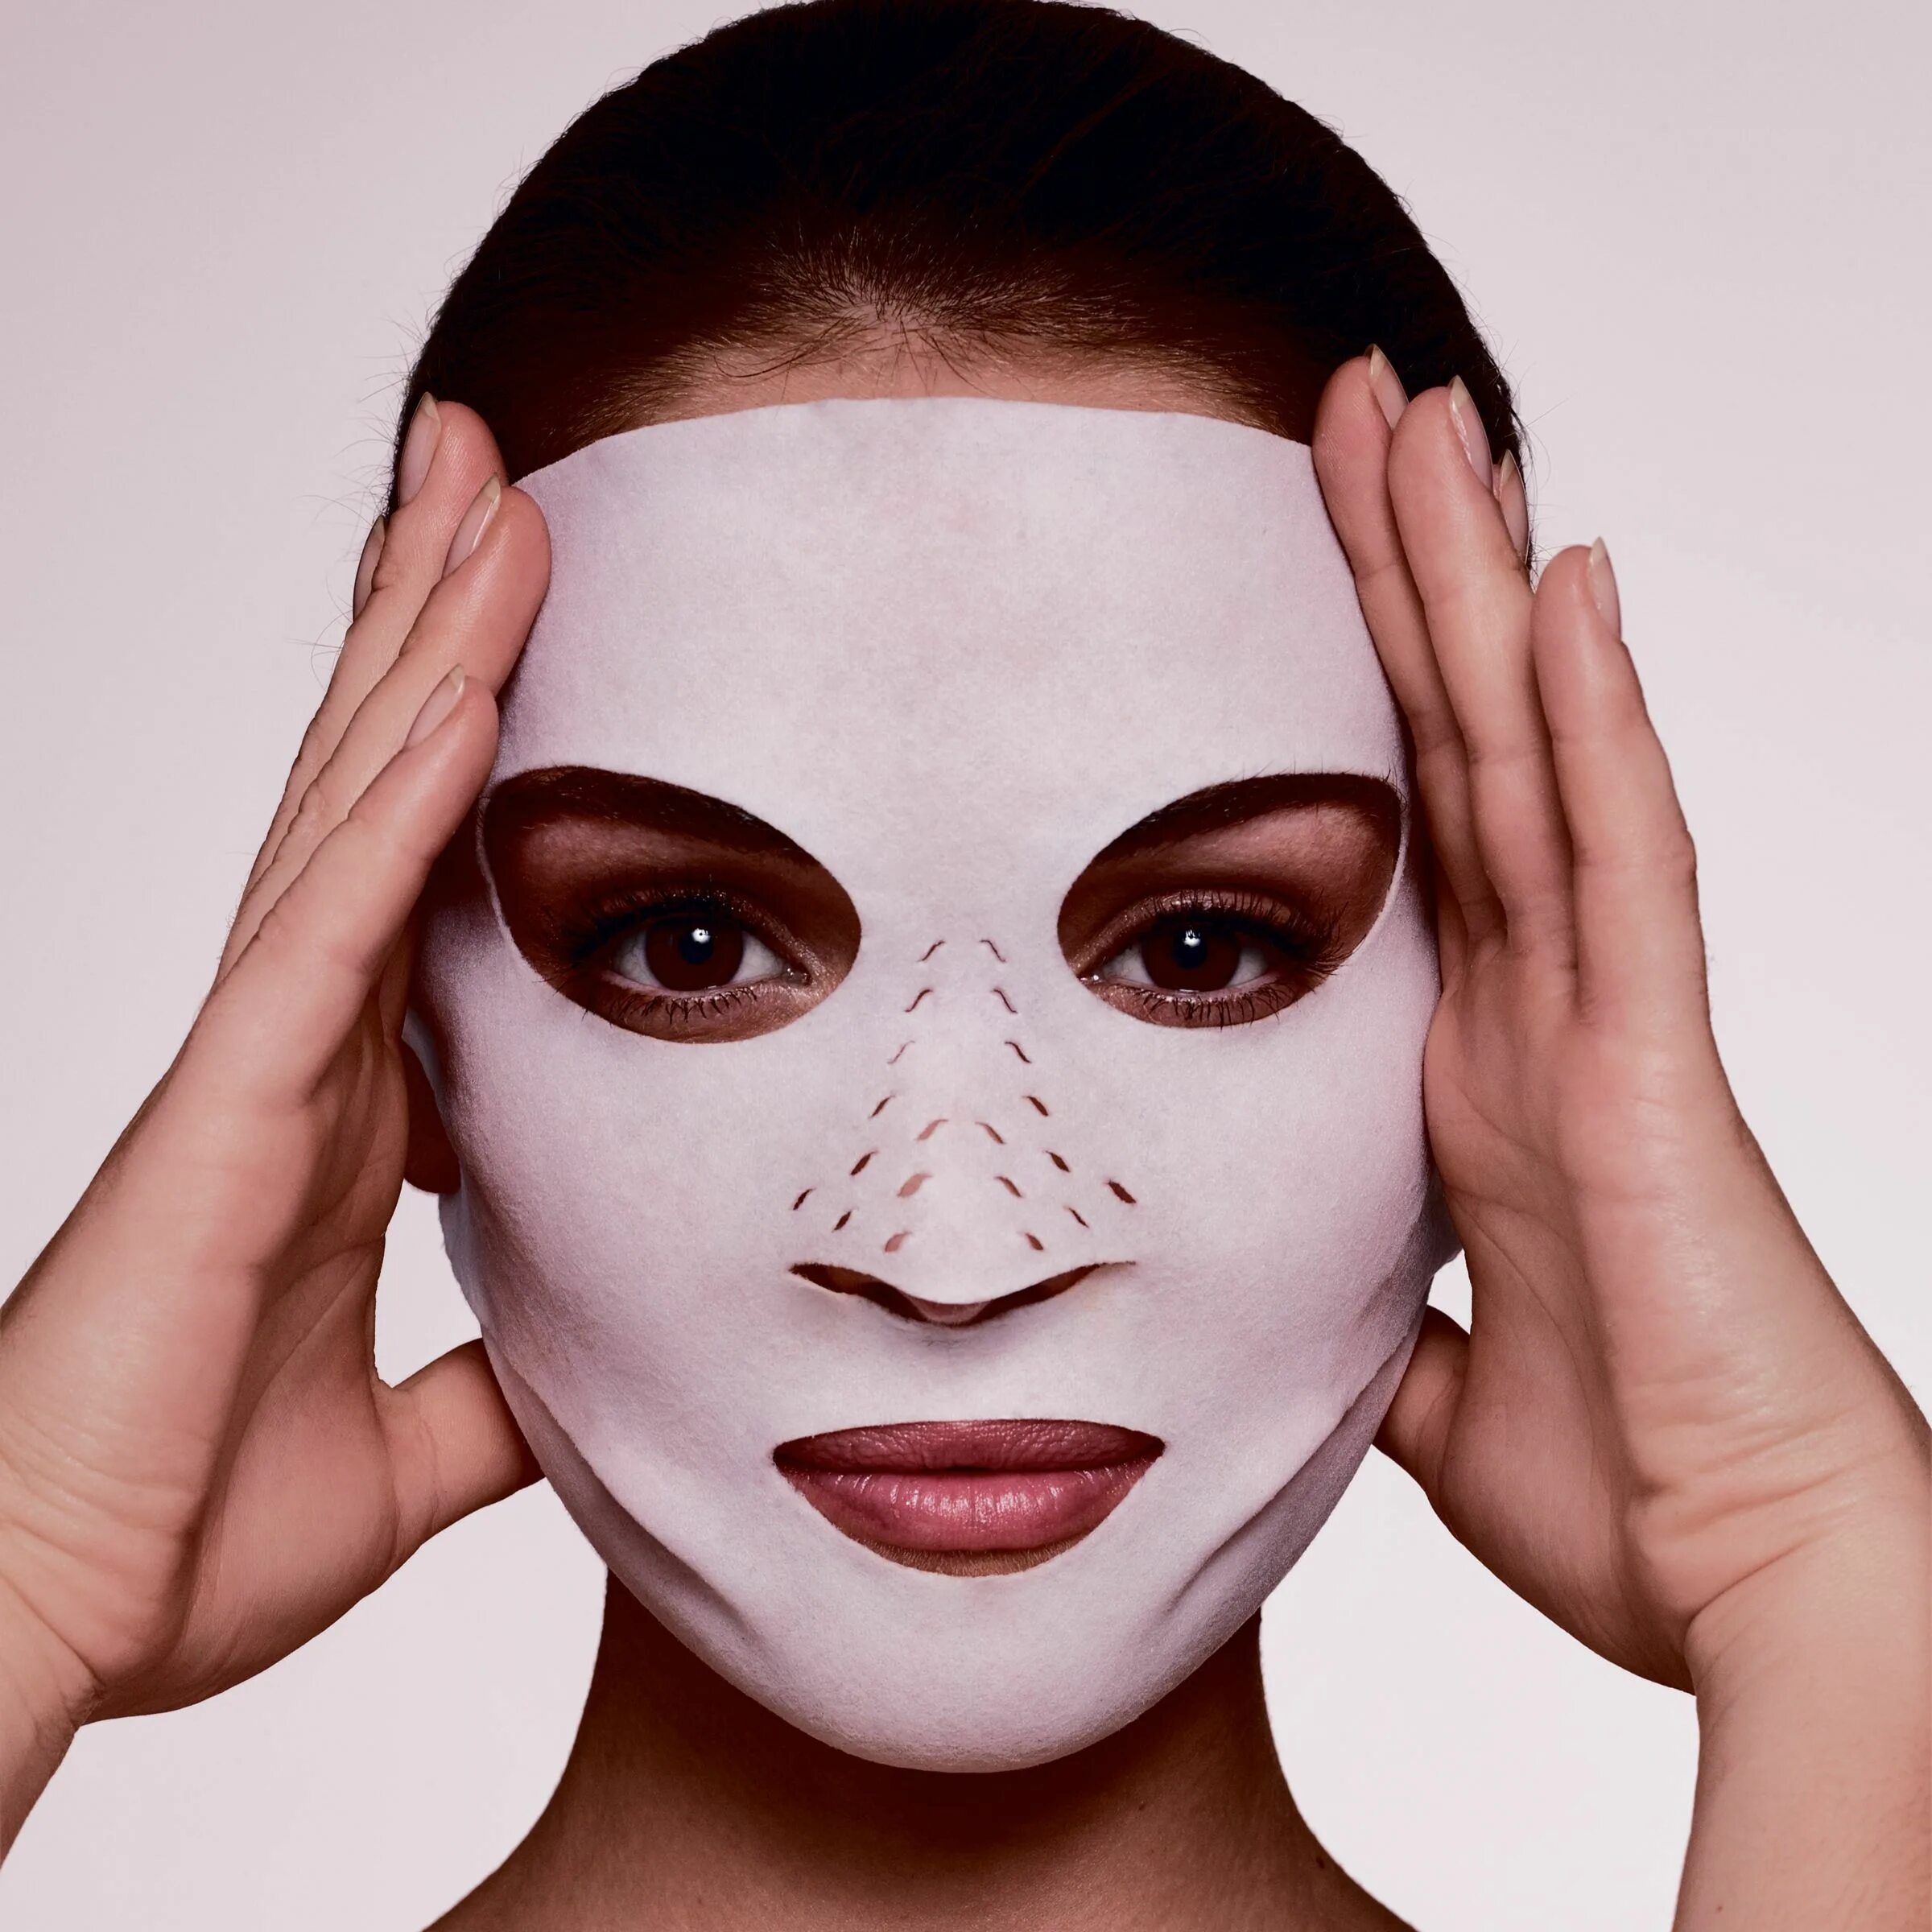 Charlotte Tilbury маска для лица instant Magic Dry Sheet. Девушка с маской на лице. Маска женского лица. Макияж маска. Как наложить маску на видео